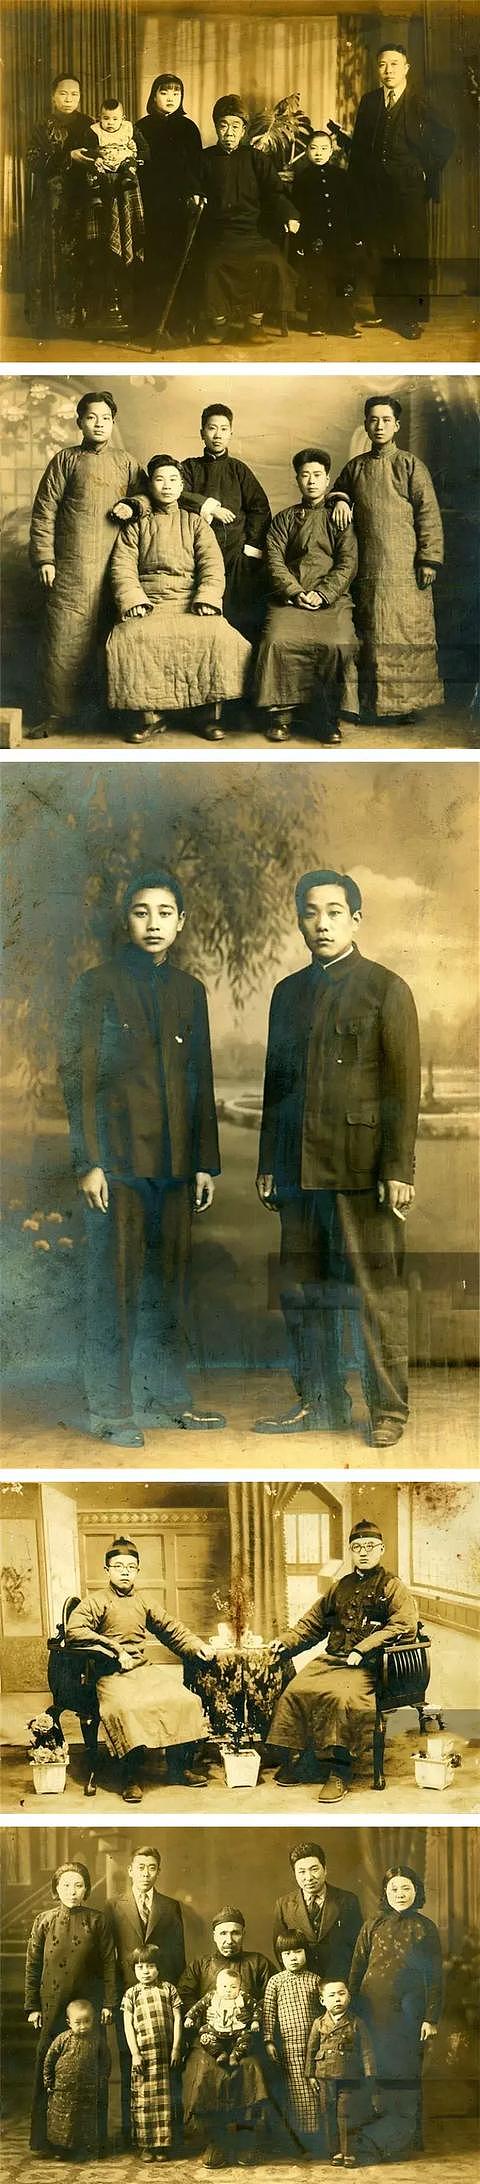 中国人拍照姿势的百年变迁